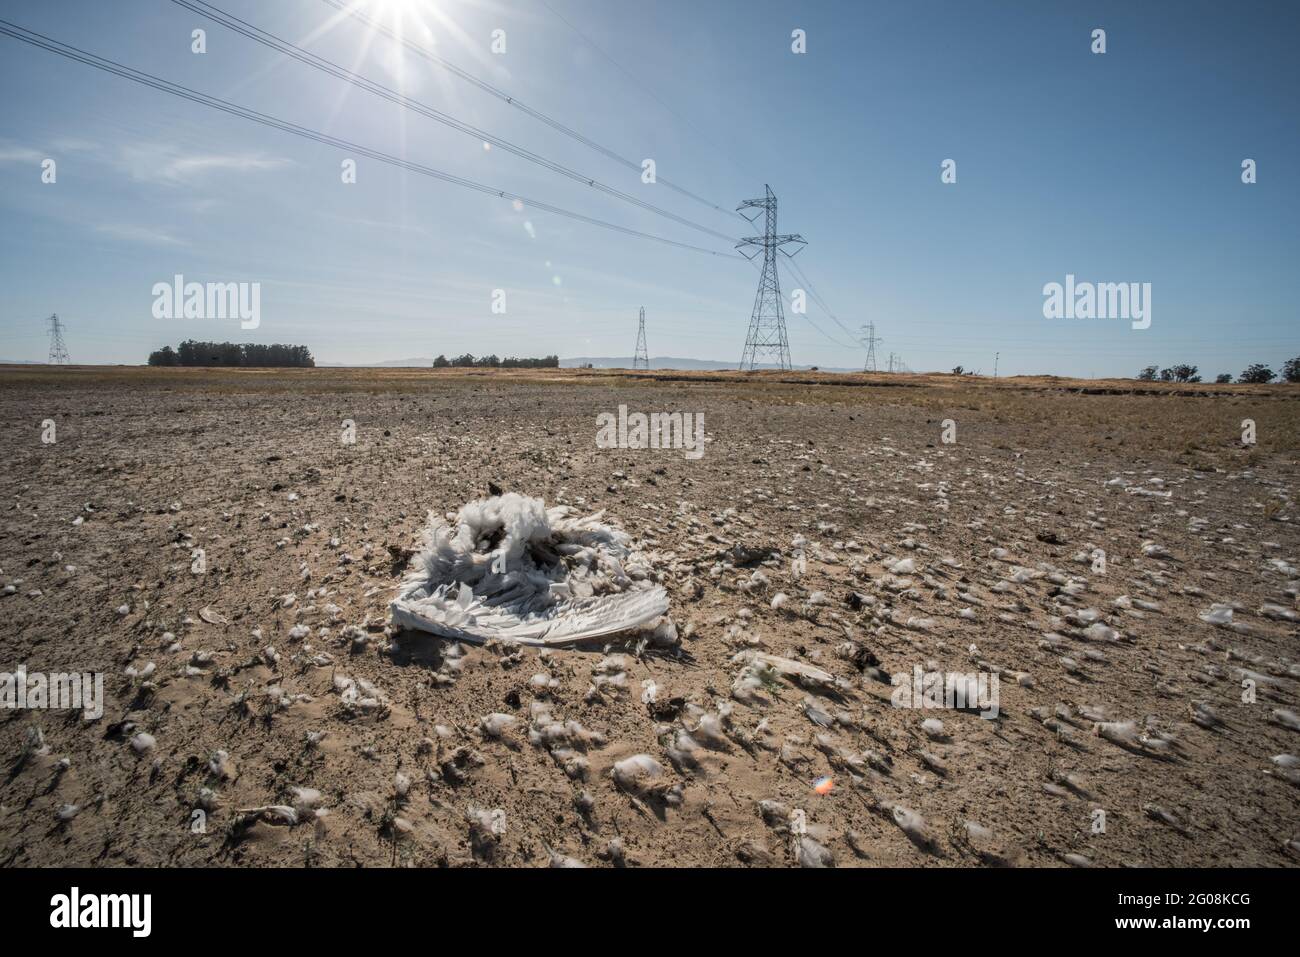 Un cigno morto di tundra (Cygnus columbianus) in California, uno dei milioni di uccelli uccisi a causa di una collisione con le linee elettriche. Foto Stock